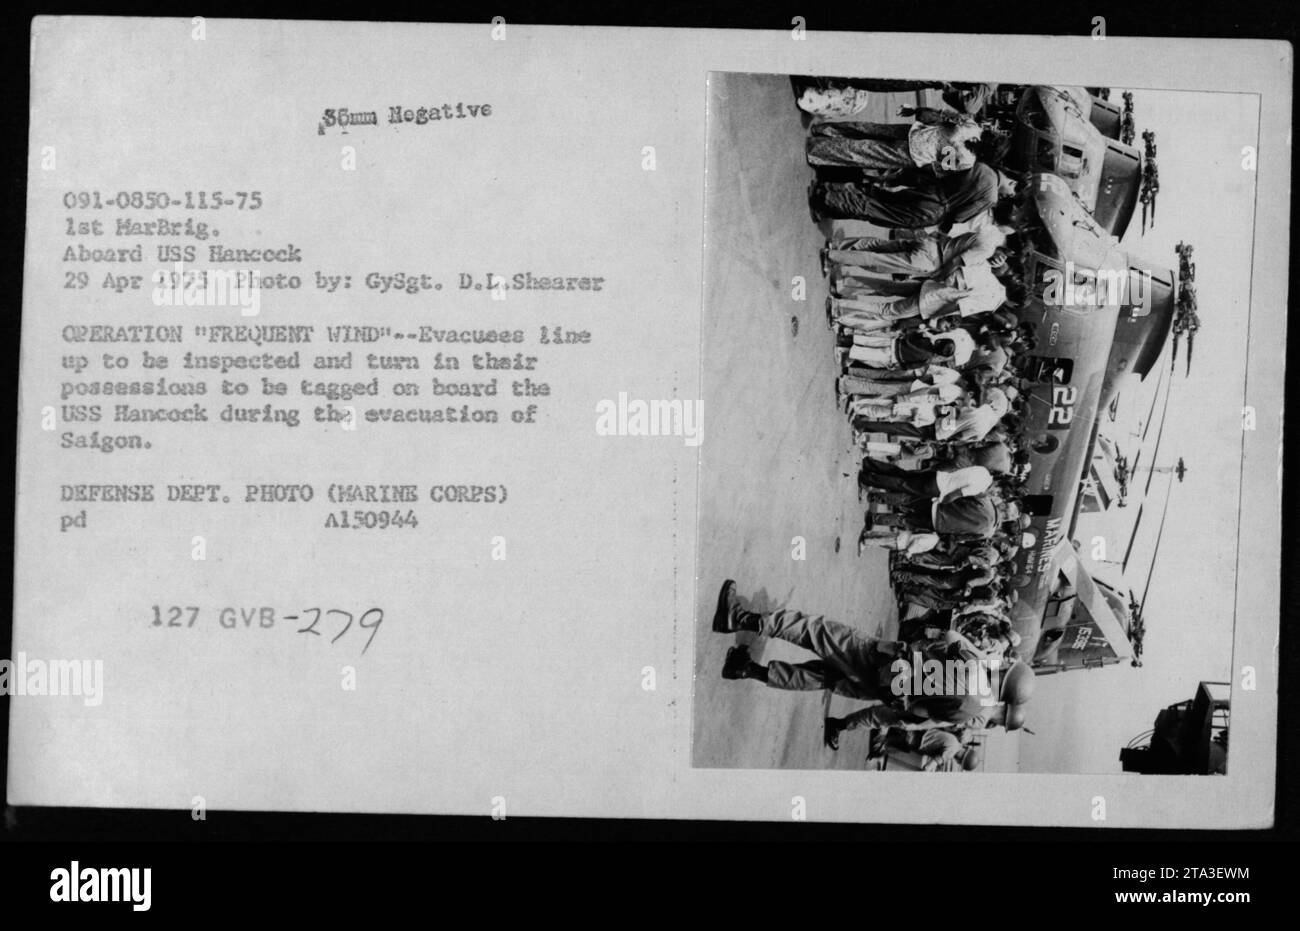 Soldaten stellen sich auf, um inspiziert zu werden und übergeben ihre Sachen, um an Bord der USS Hancock während der Evakuierung von Saigon markiert zu werden. Dieses Foto wurde während der Operation Frequent Wind, der Evakuierung von Phnom Penh und Saigon im Jahr 1975 aufgenommen. Stockfoto